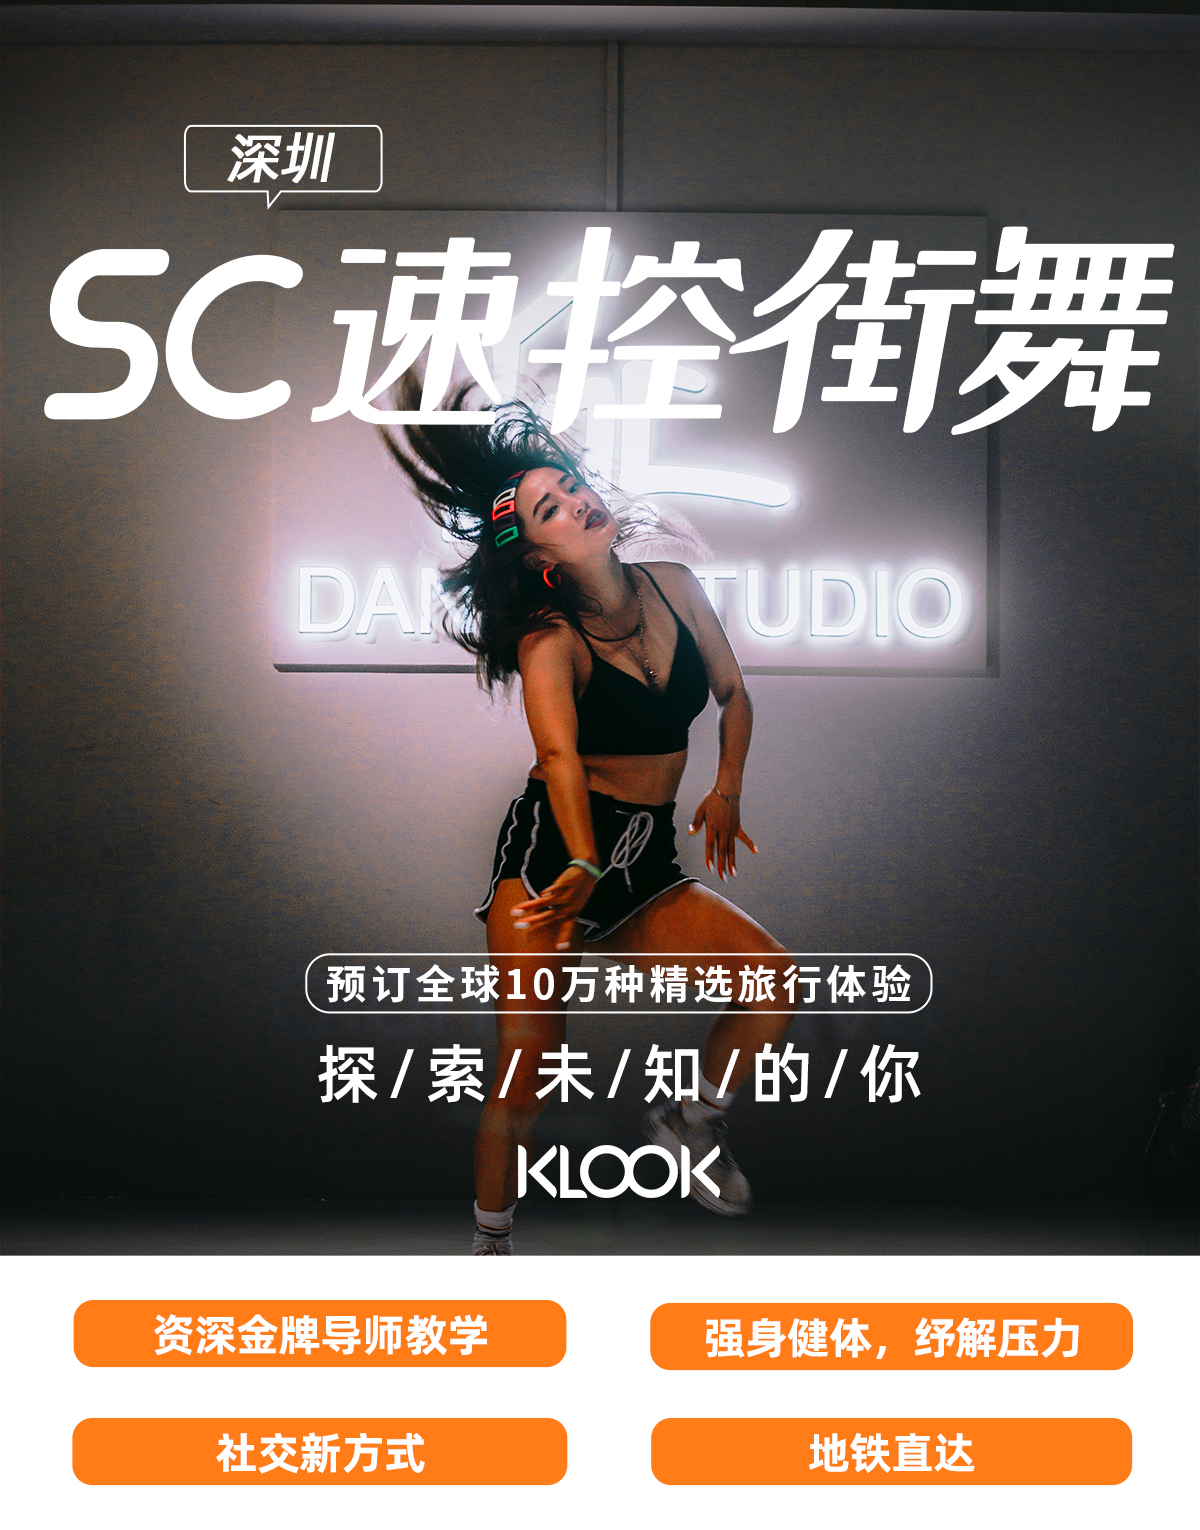 【深圳街舞課程】SC速控街舞體驗